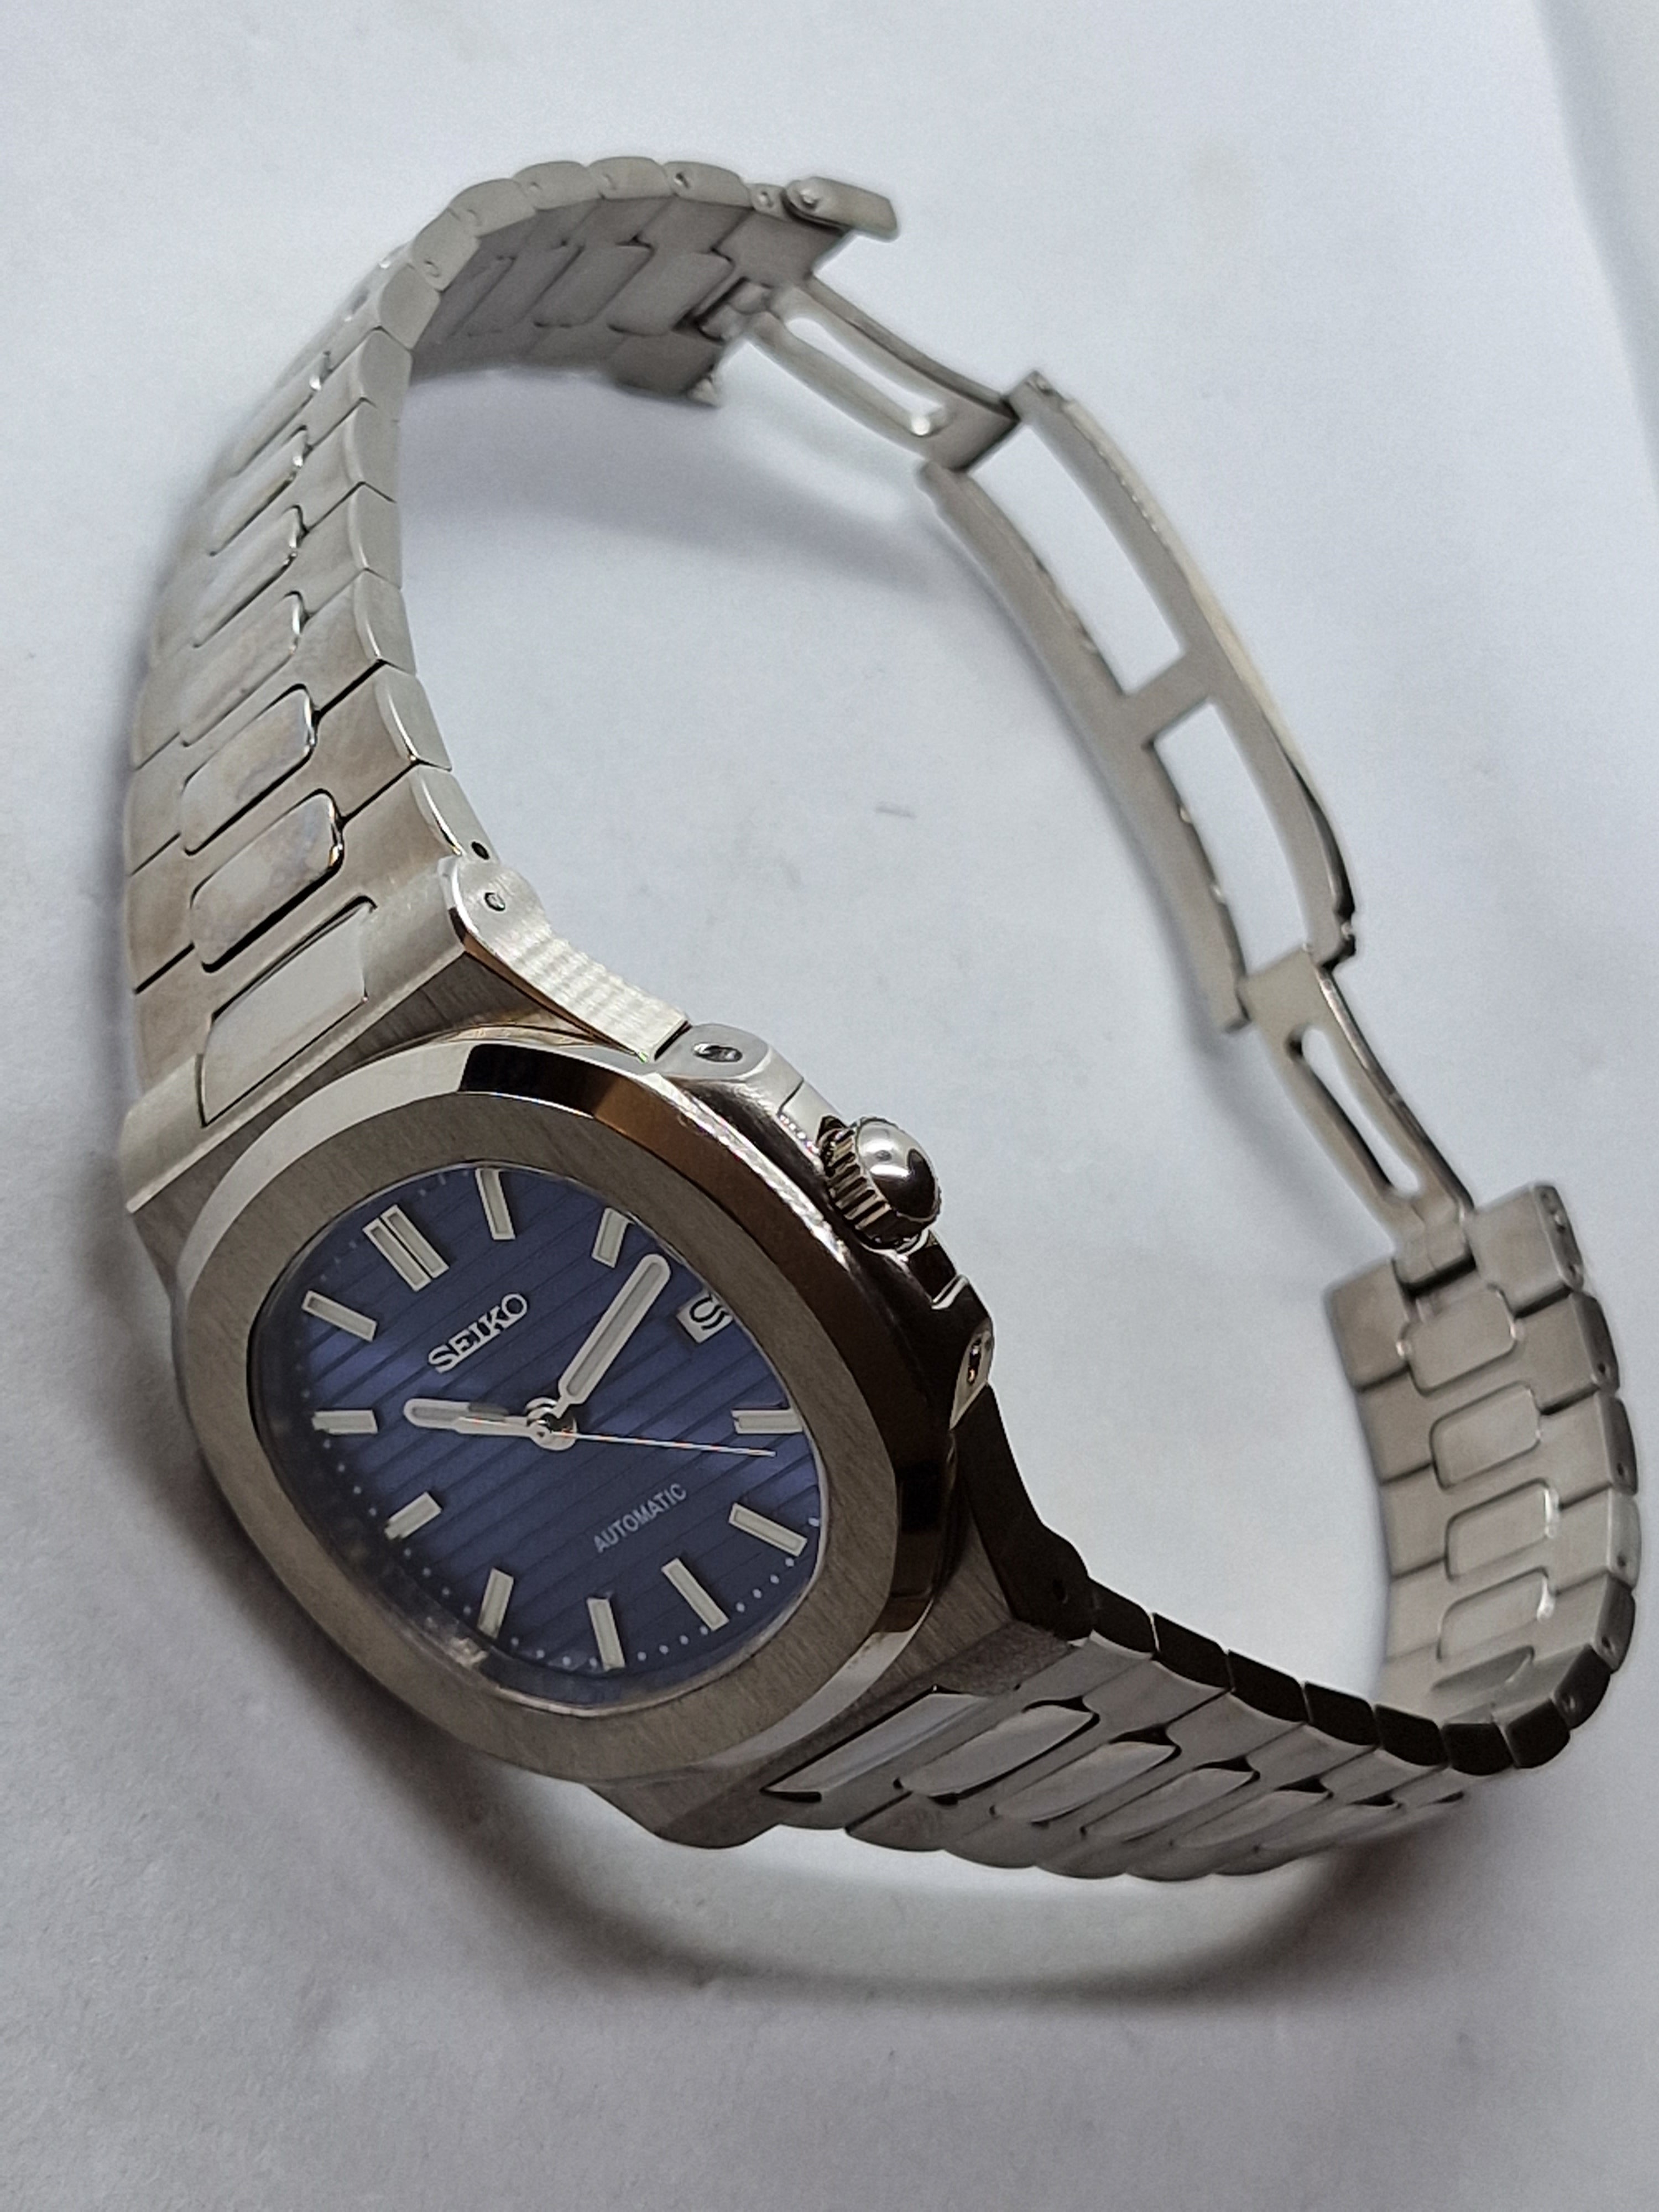 ノーチラスtype 腕時計 seiko セイコーnh35搭載 ターコイズ ブルー - 時計